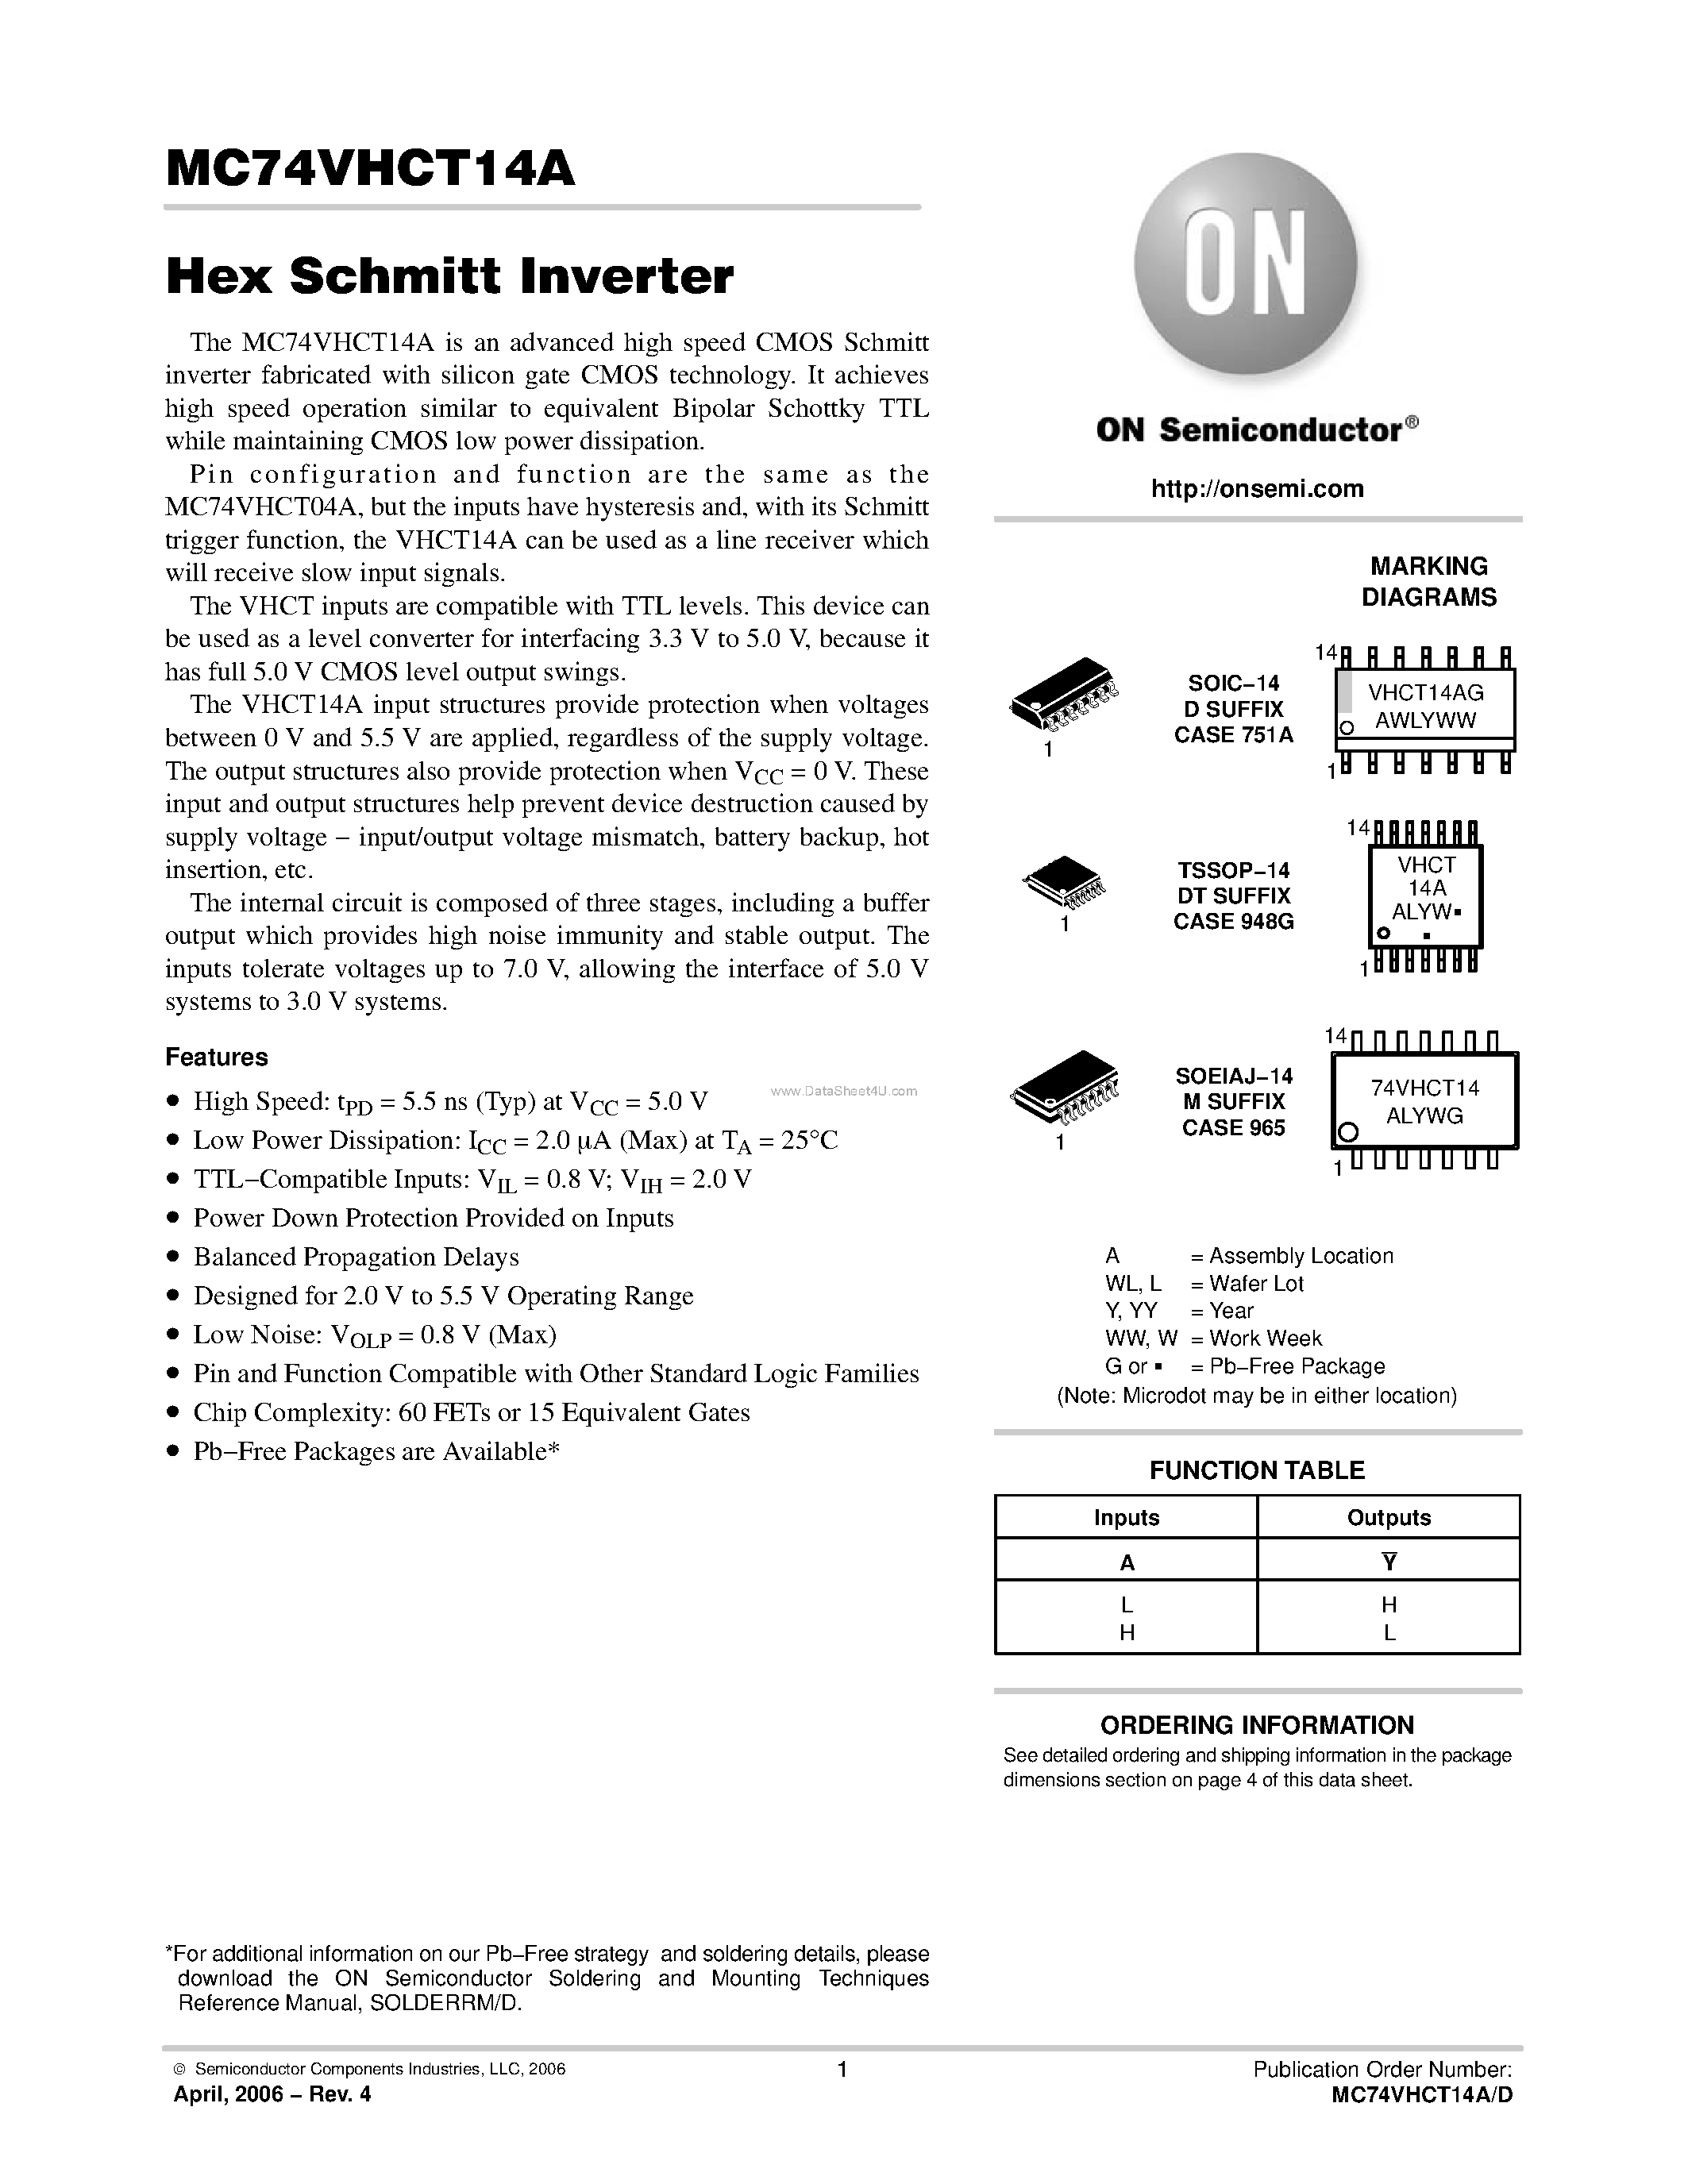 Даташит MC74VHCT14A - Hex Schmitt Inverter страница 1